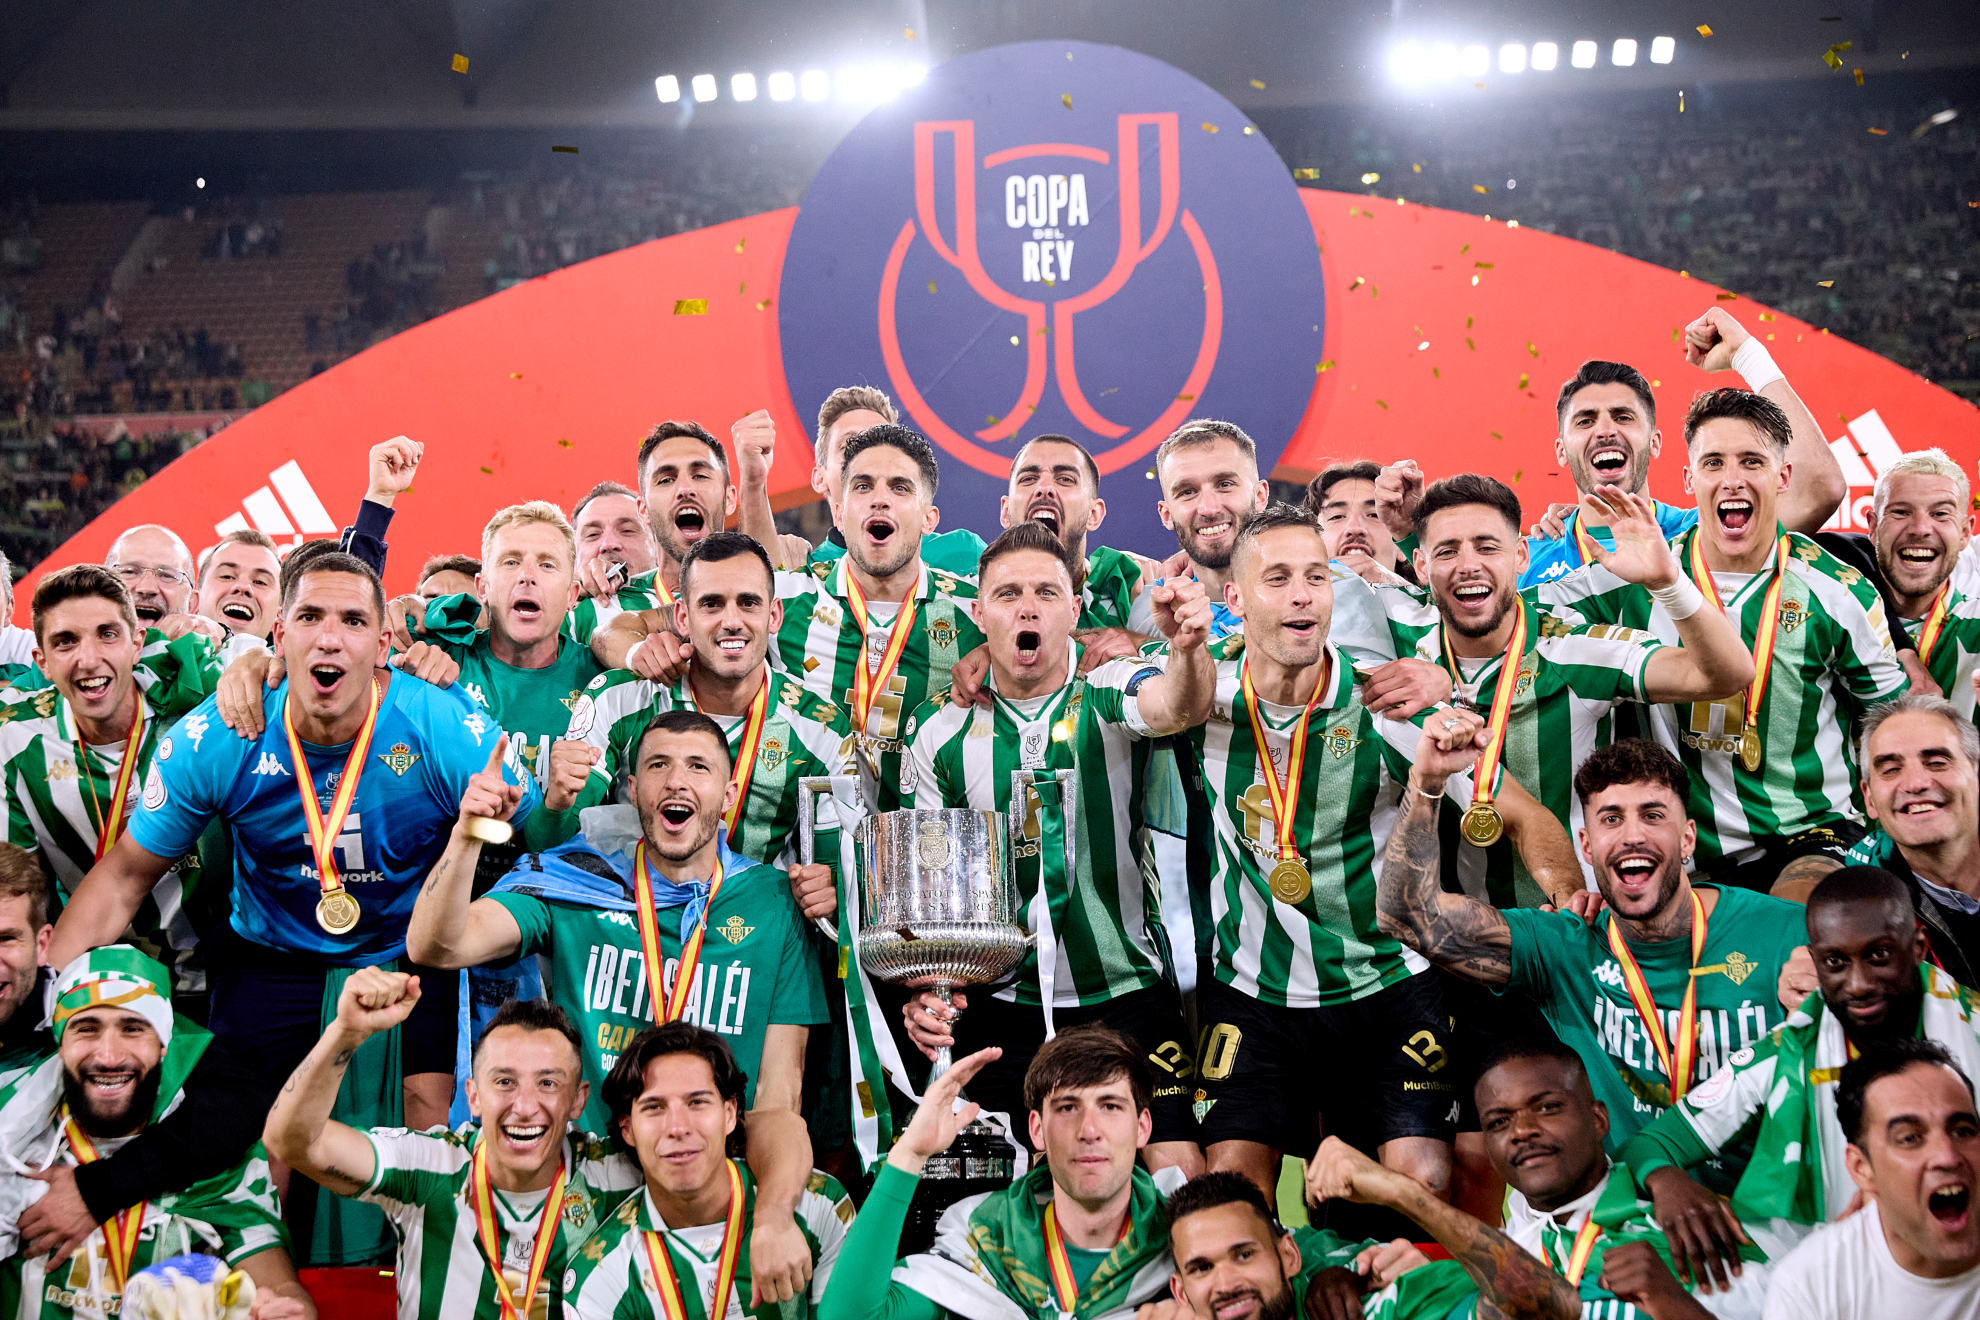 La plantilla del Betis celebrando el título de Copa del Rey. / RFEF